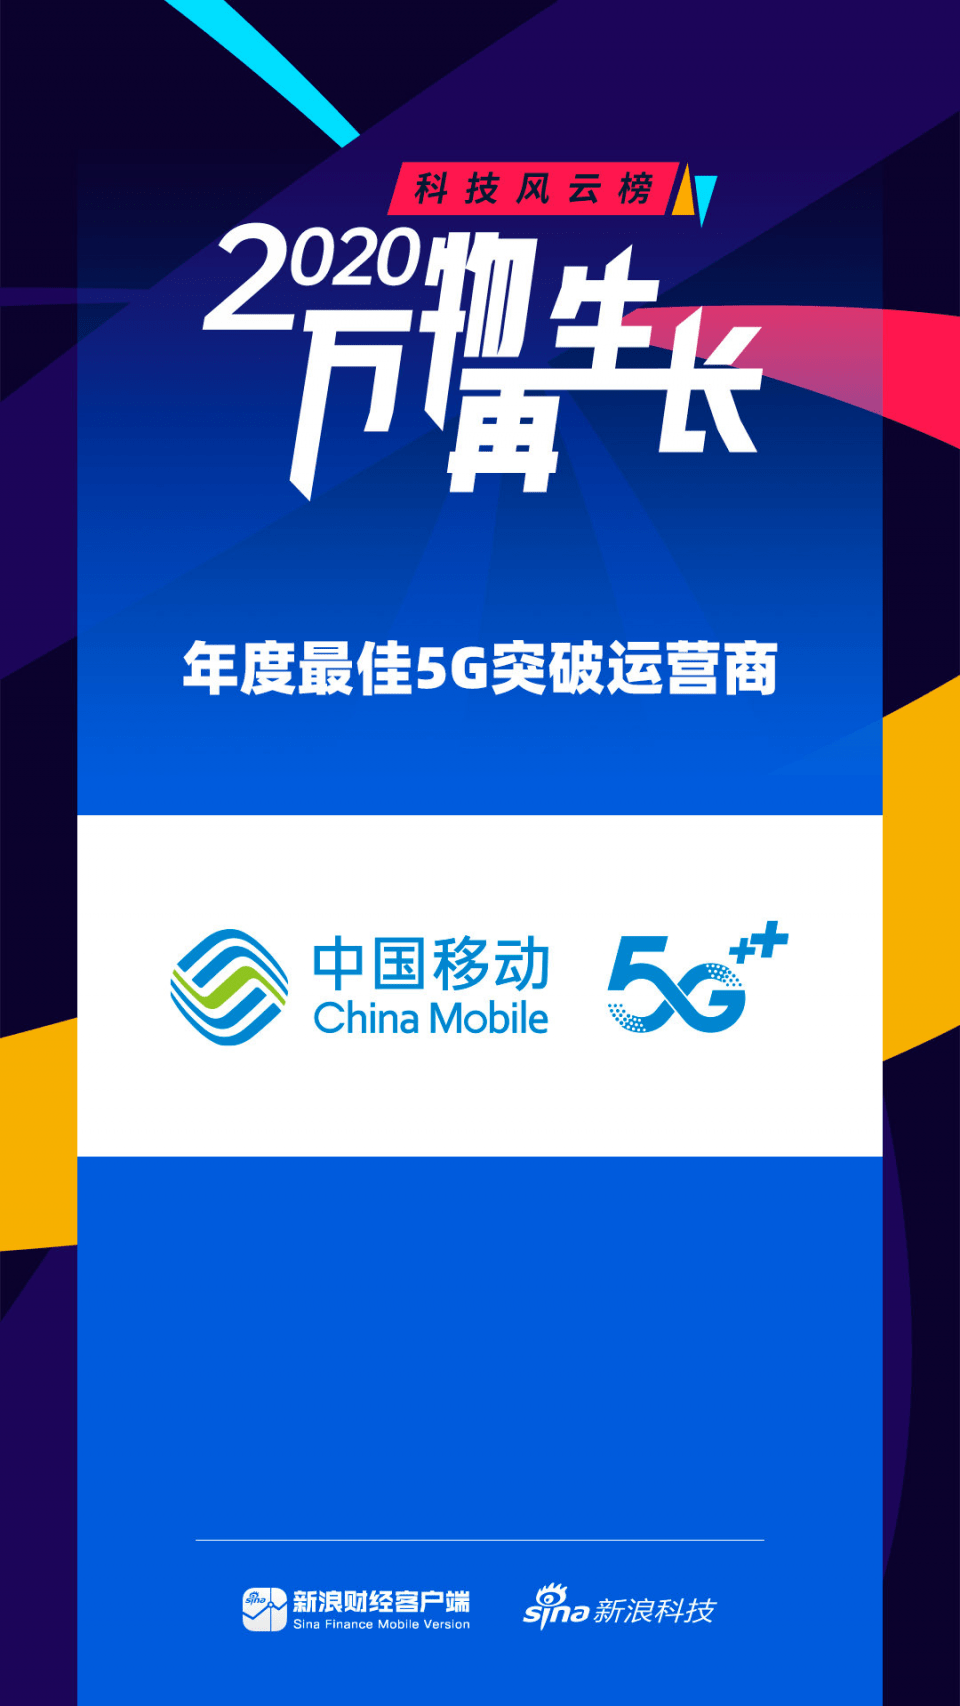 “亚美体育官方入口”
中国移动获颁最佳5G突破运营商 网络、优惠、服务全面领先！(图1)